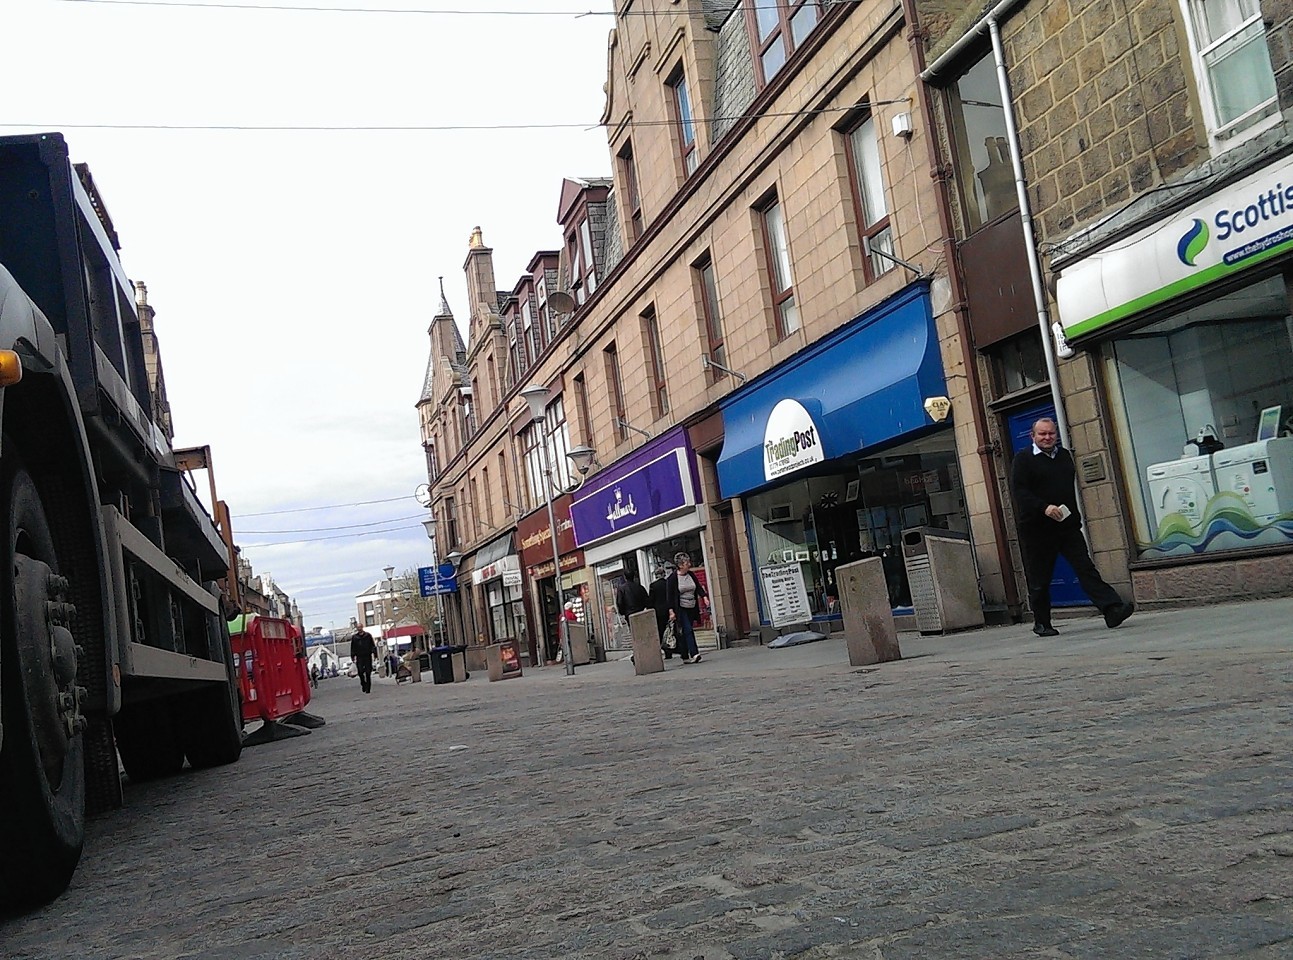 Marischal Street in Peterhead